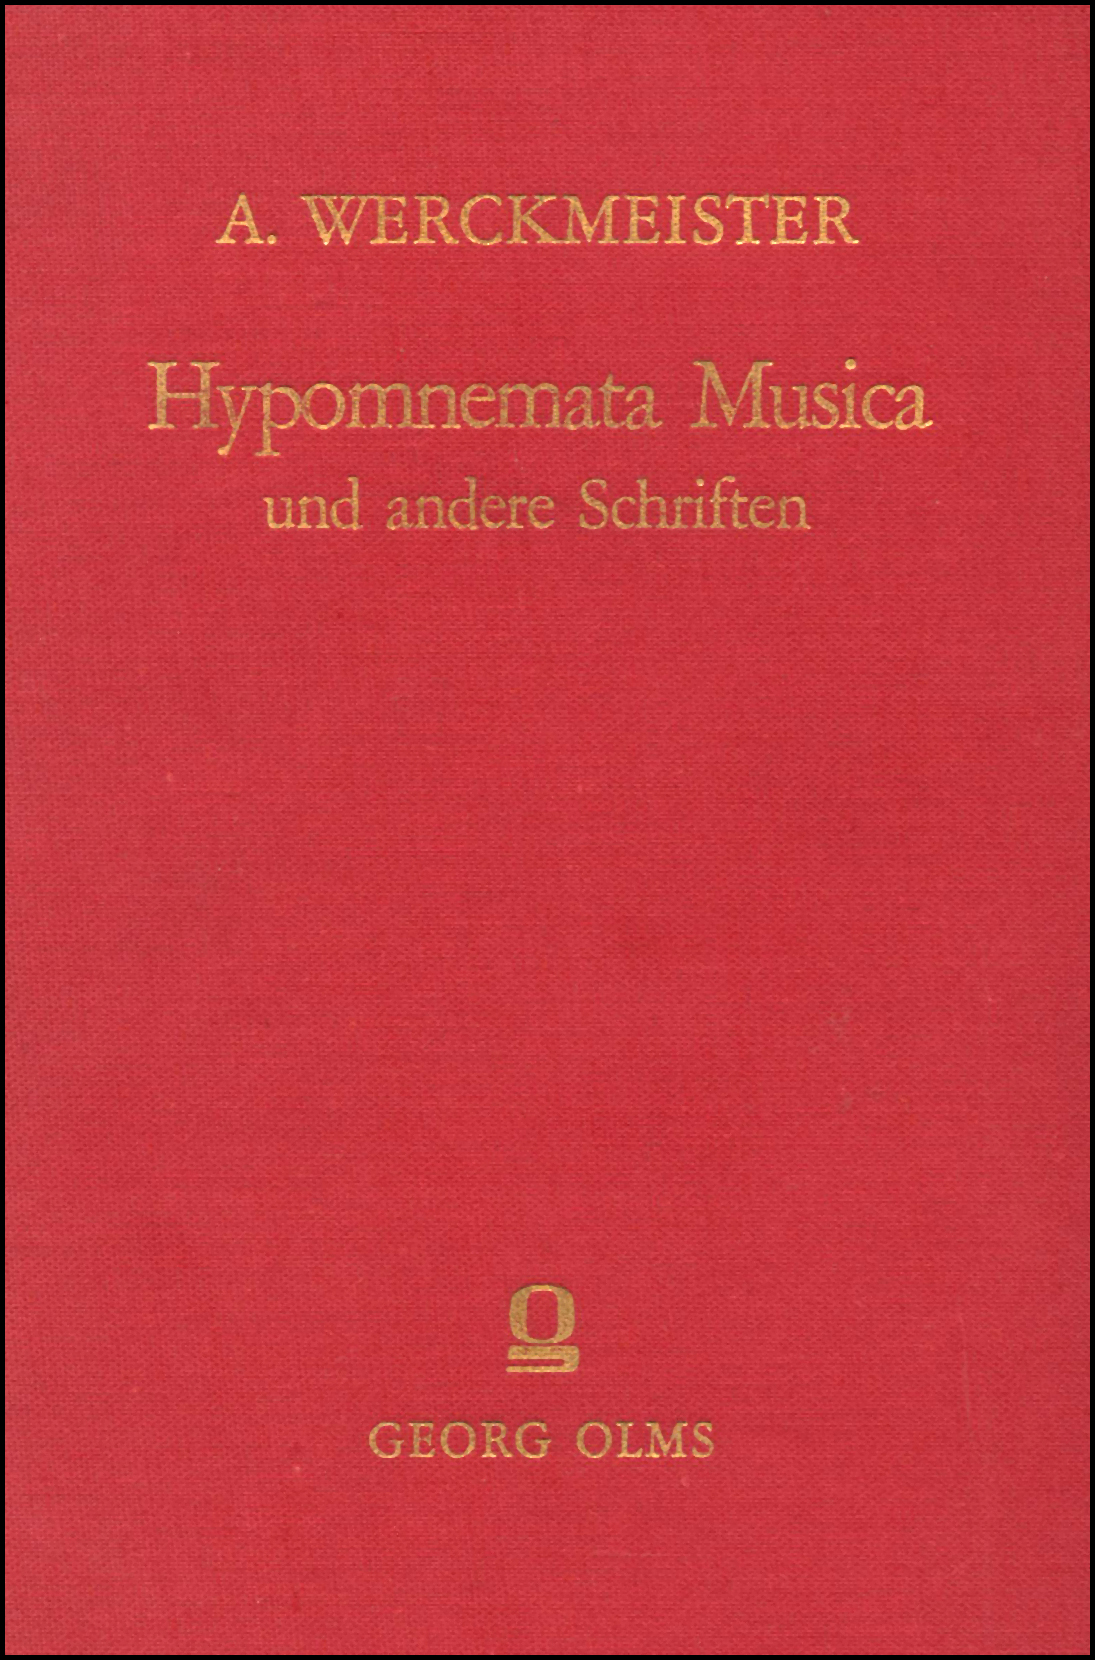 Hypomnemata Musica (1697), Erweiterte und verbesserte Orgel-Probe (1698), Cribrum Musicum (1700), Harmonologia Musica (1702), Musicalische Paradoxal-Discourse (1707). 5 Tle. in 1 Band. - Werckmeister, Andreas